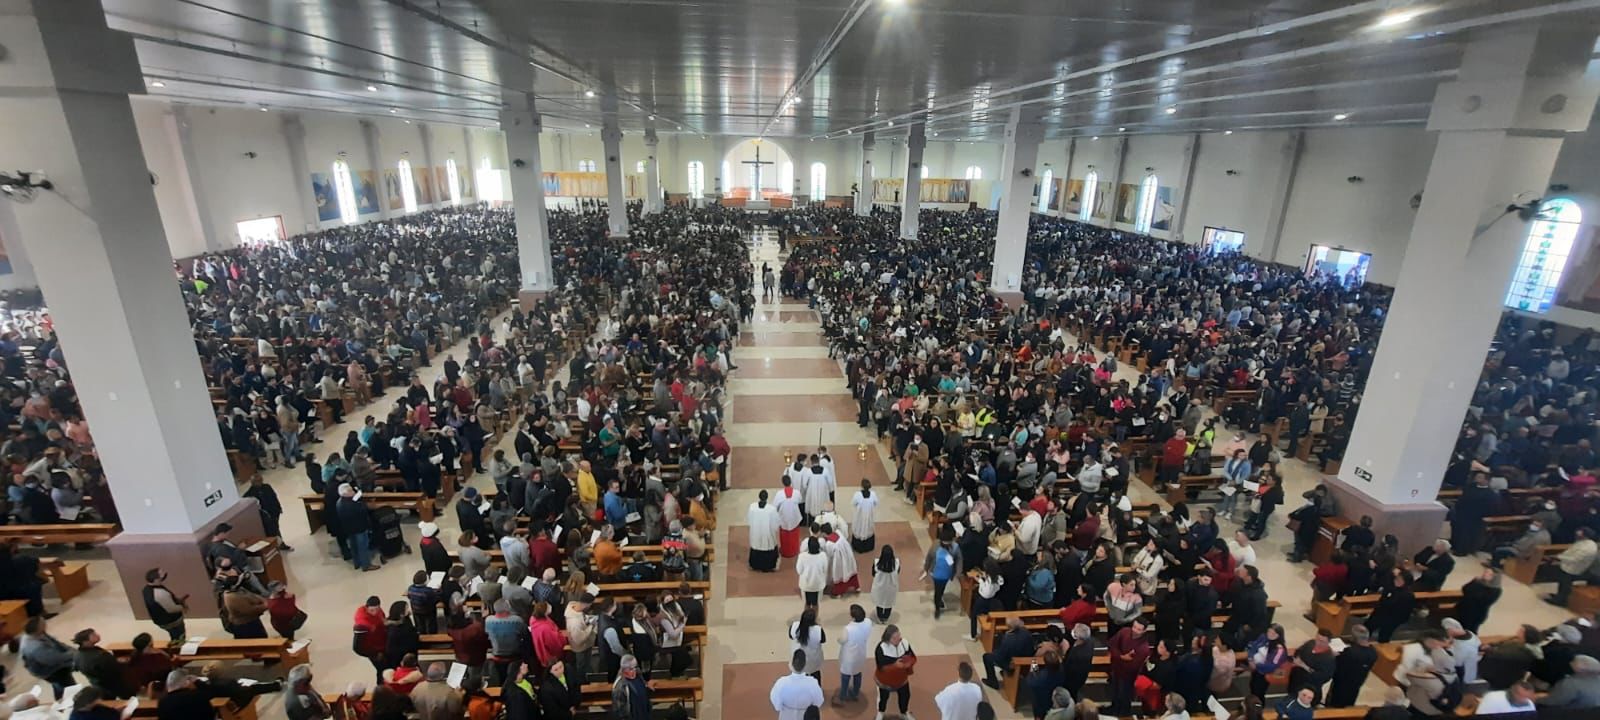 Dia de Santa Rita de Cássia: celebrações em Sorocaba e inauguração de Santuário em Minas Gerais